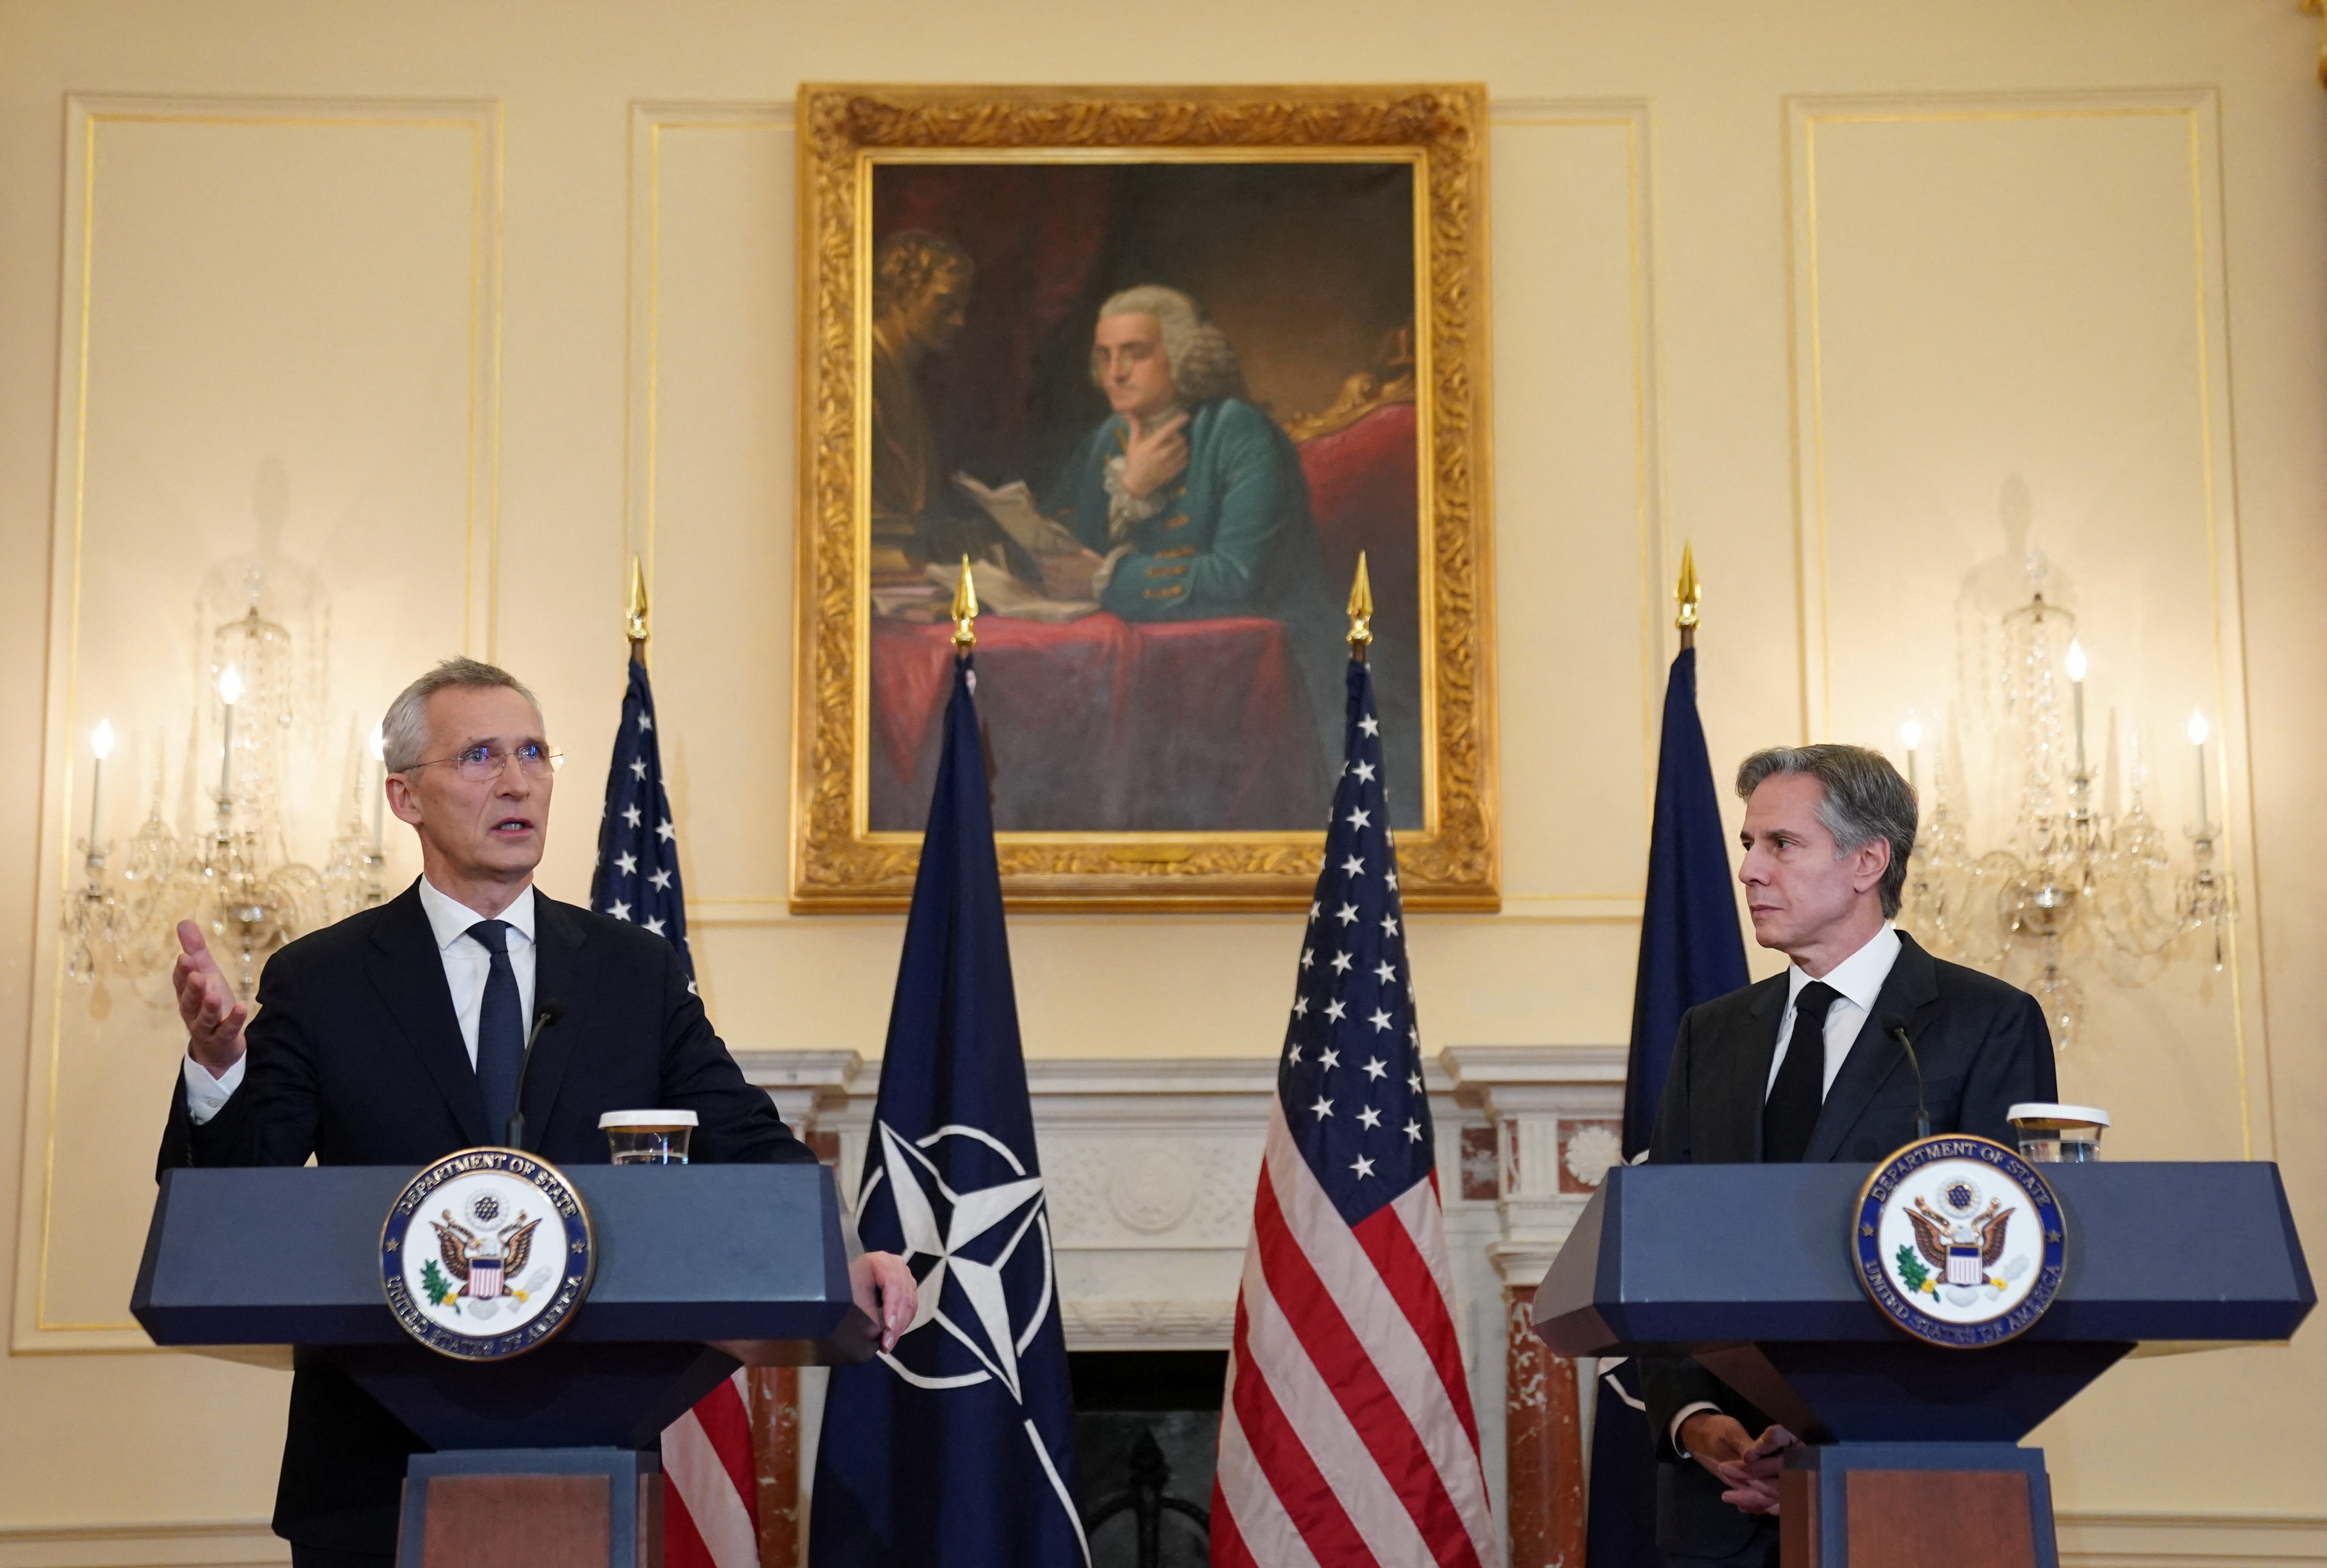 Blinken reconoció que Estados Unidos y la OTAN están “muy centrados” en la membresía sueca y finlandesa, países que “están listos para aportar sus puntos fuertes” a la Alianza Atlántica, según un comunicado difundido por la propia OTAN. (REUTERS)